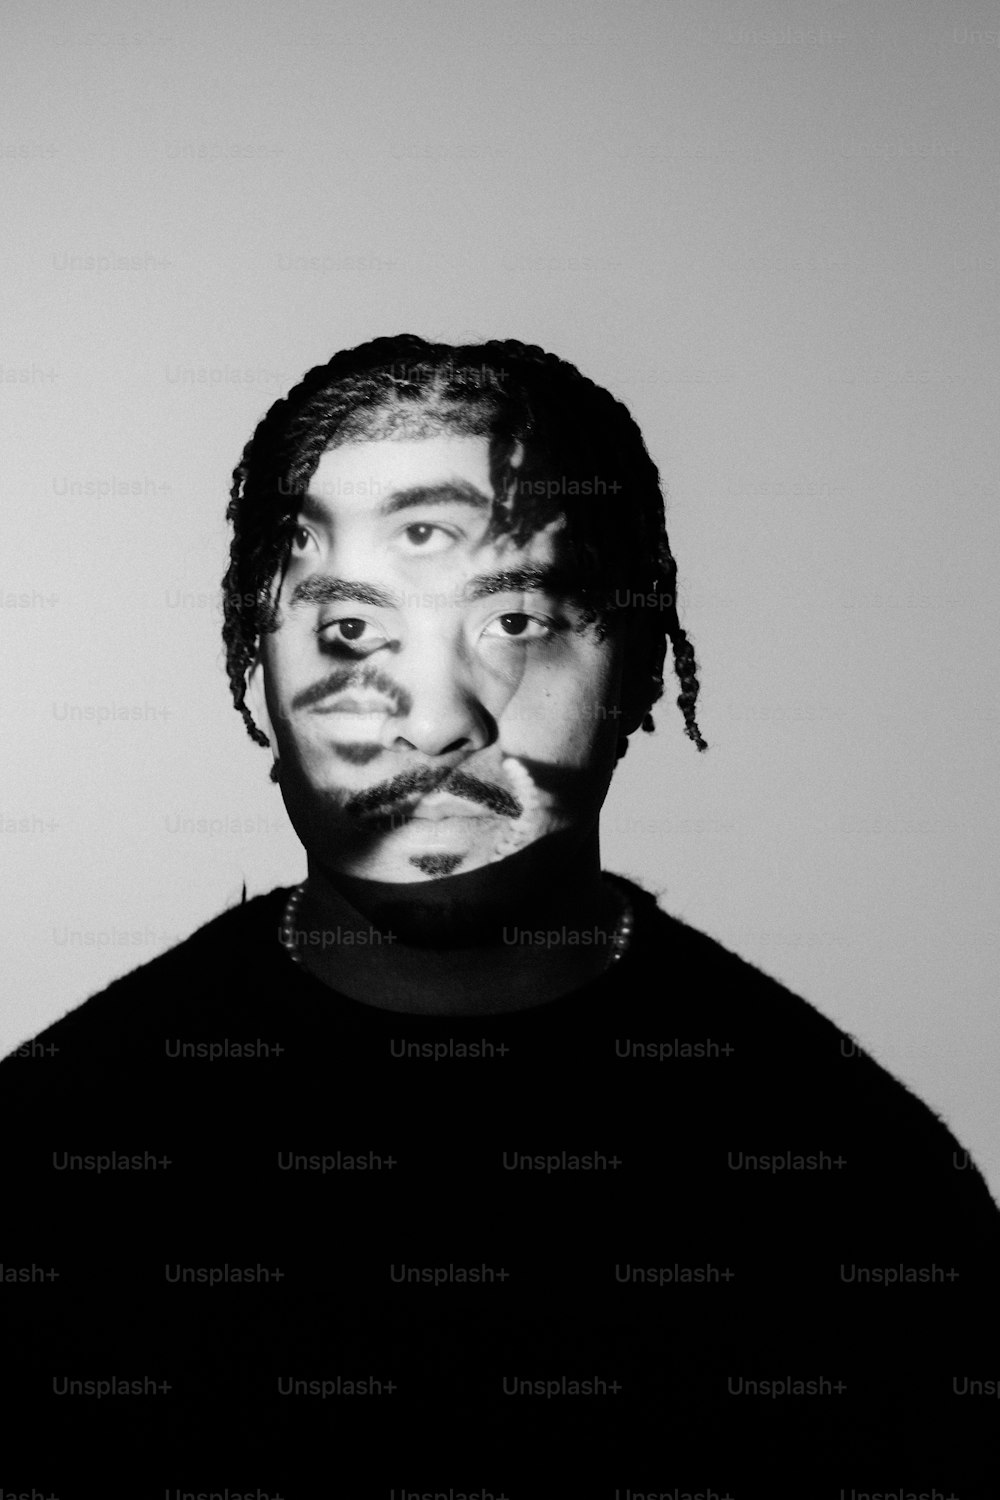 Una foto en blanco y negro de un hombre con la cara pintada